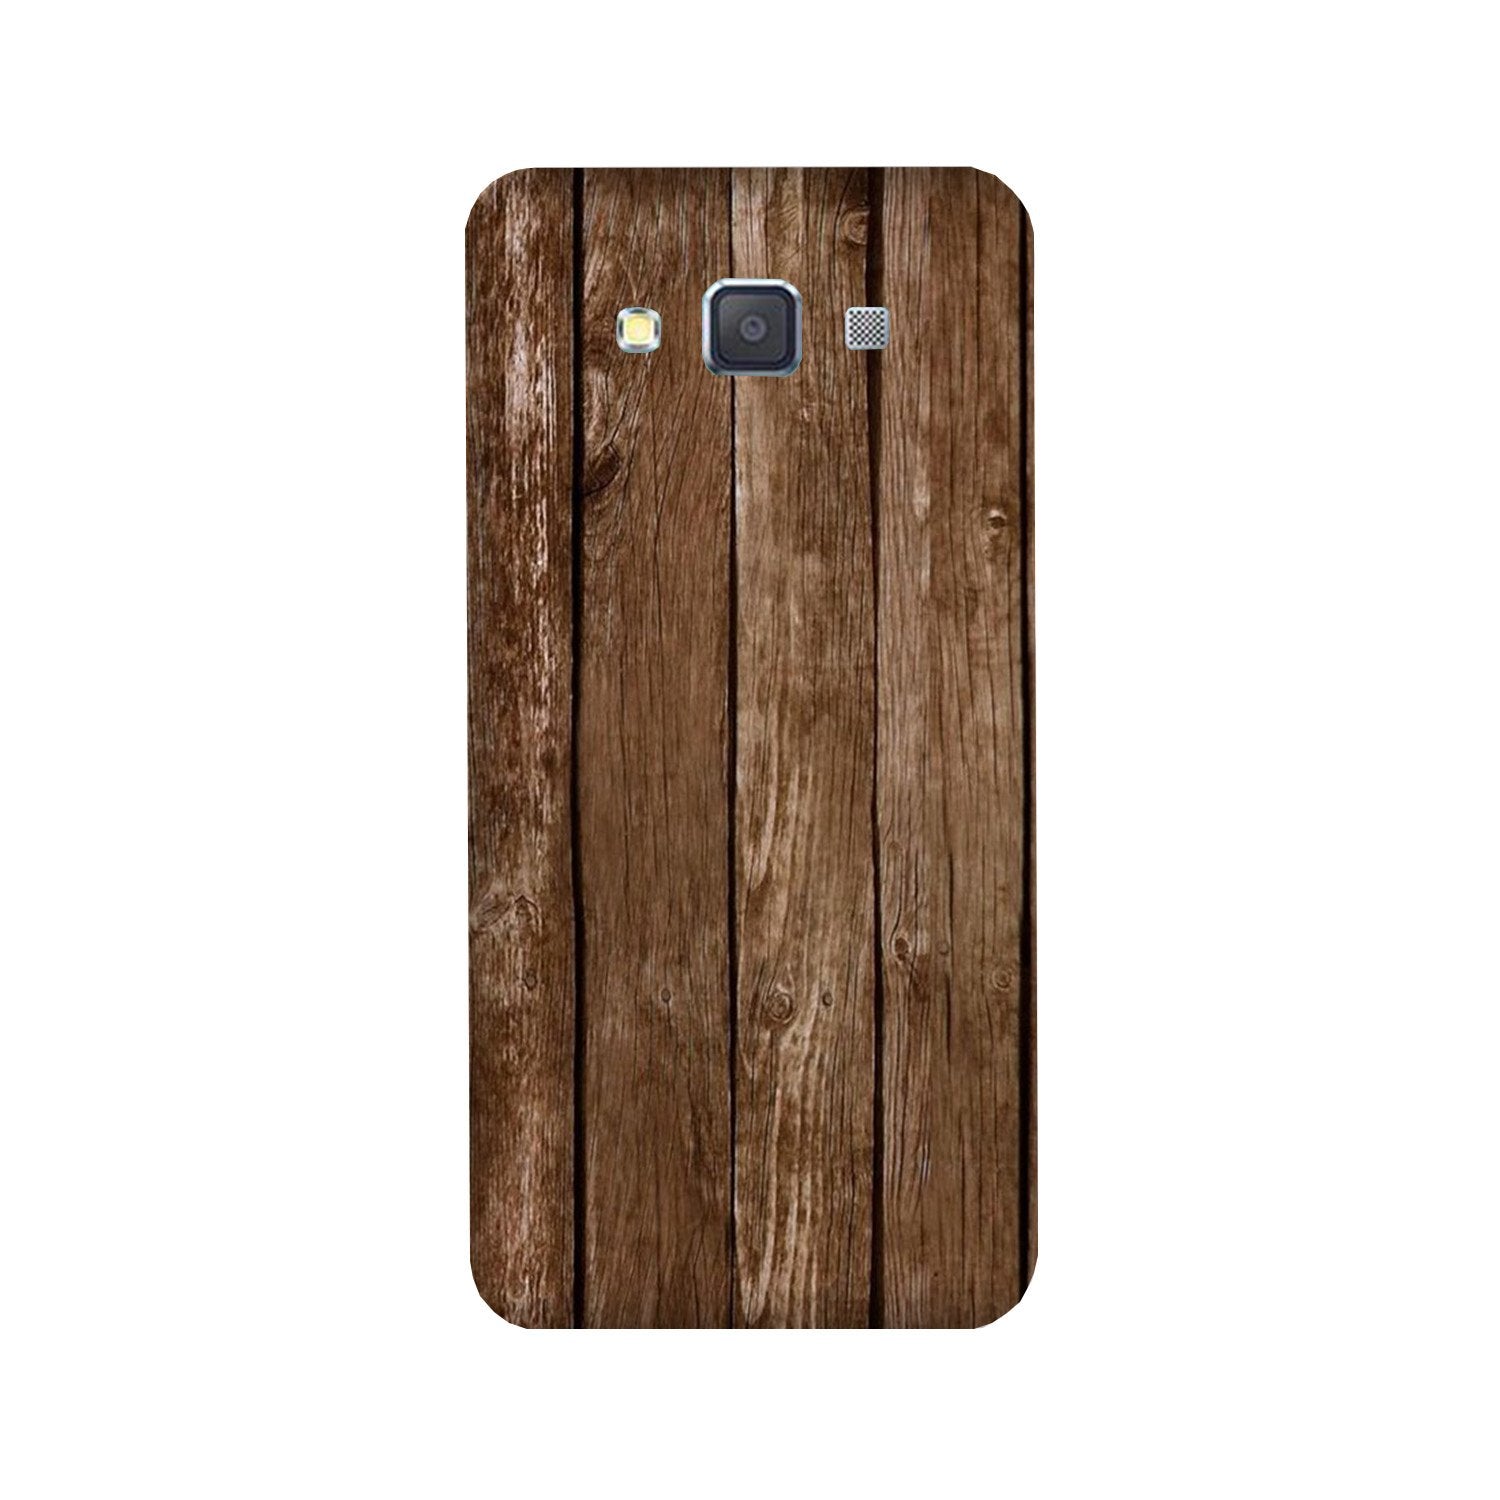 Wooden Look Case for Galaxy E5(Design - 112)